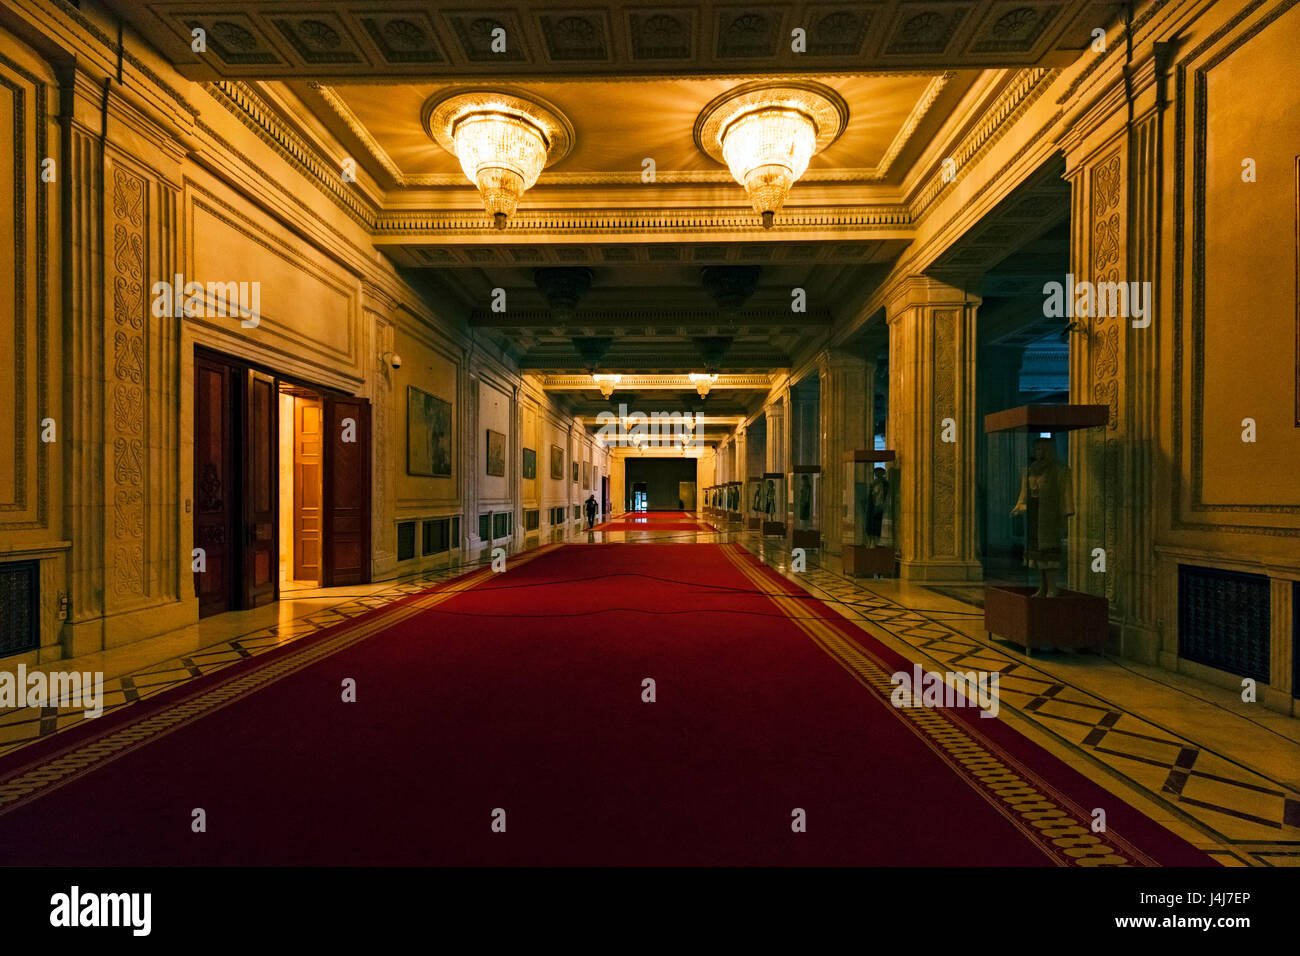 Stock Foto - Innere des Palastes des Parlaments in Bukarest, der Hauptstadt von Rumänien Stockfoto